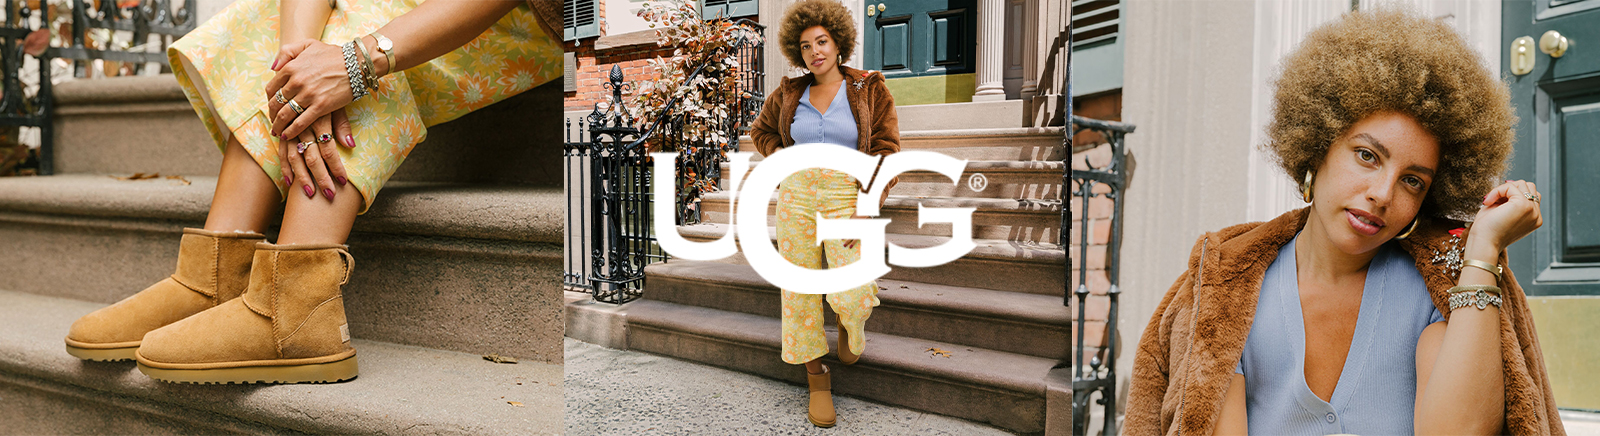 UGG Damen Boots, Pantoletten & mehr kaufen im GISY Online Shop